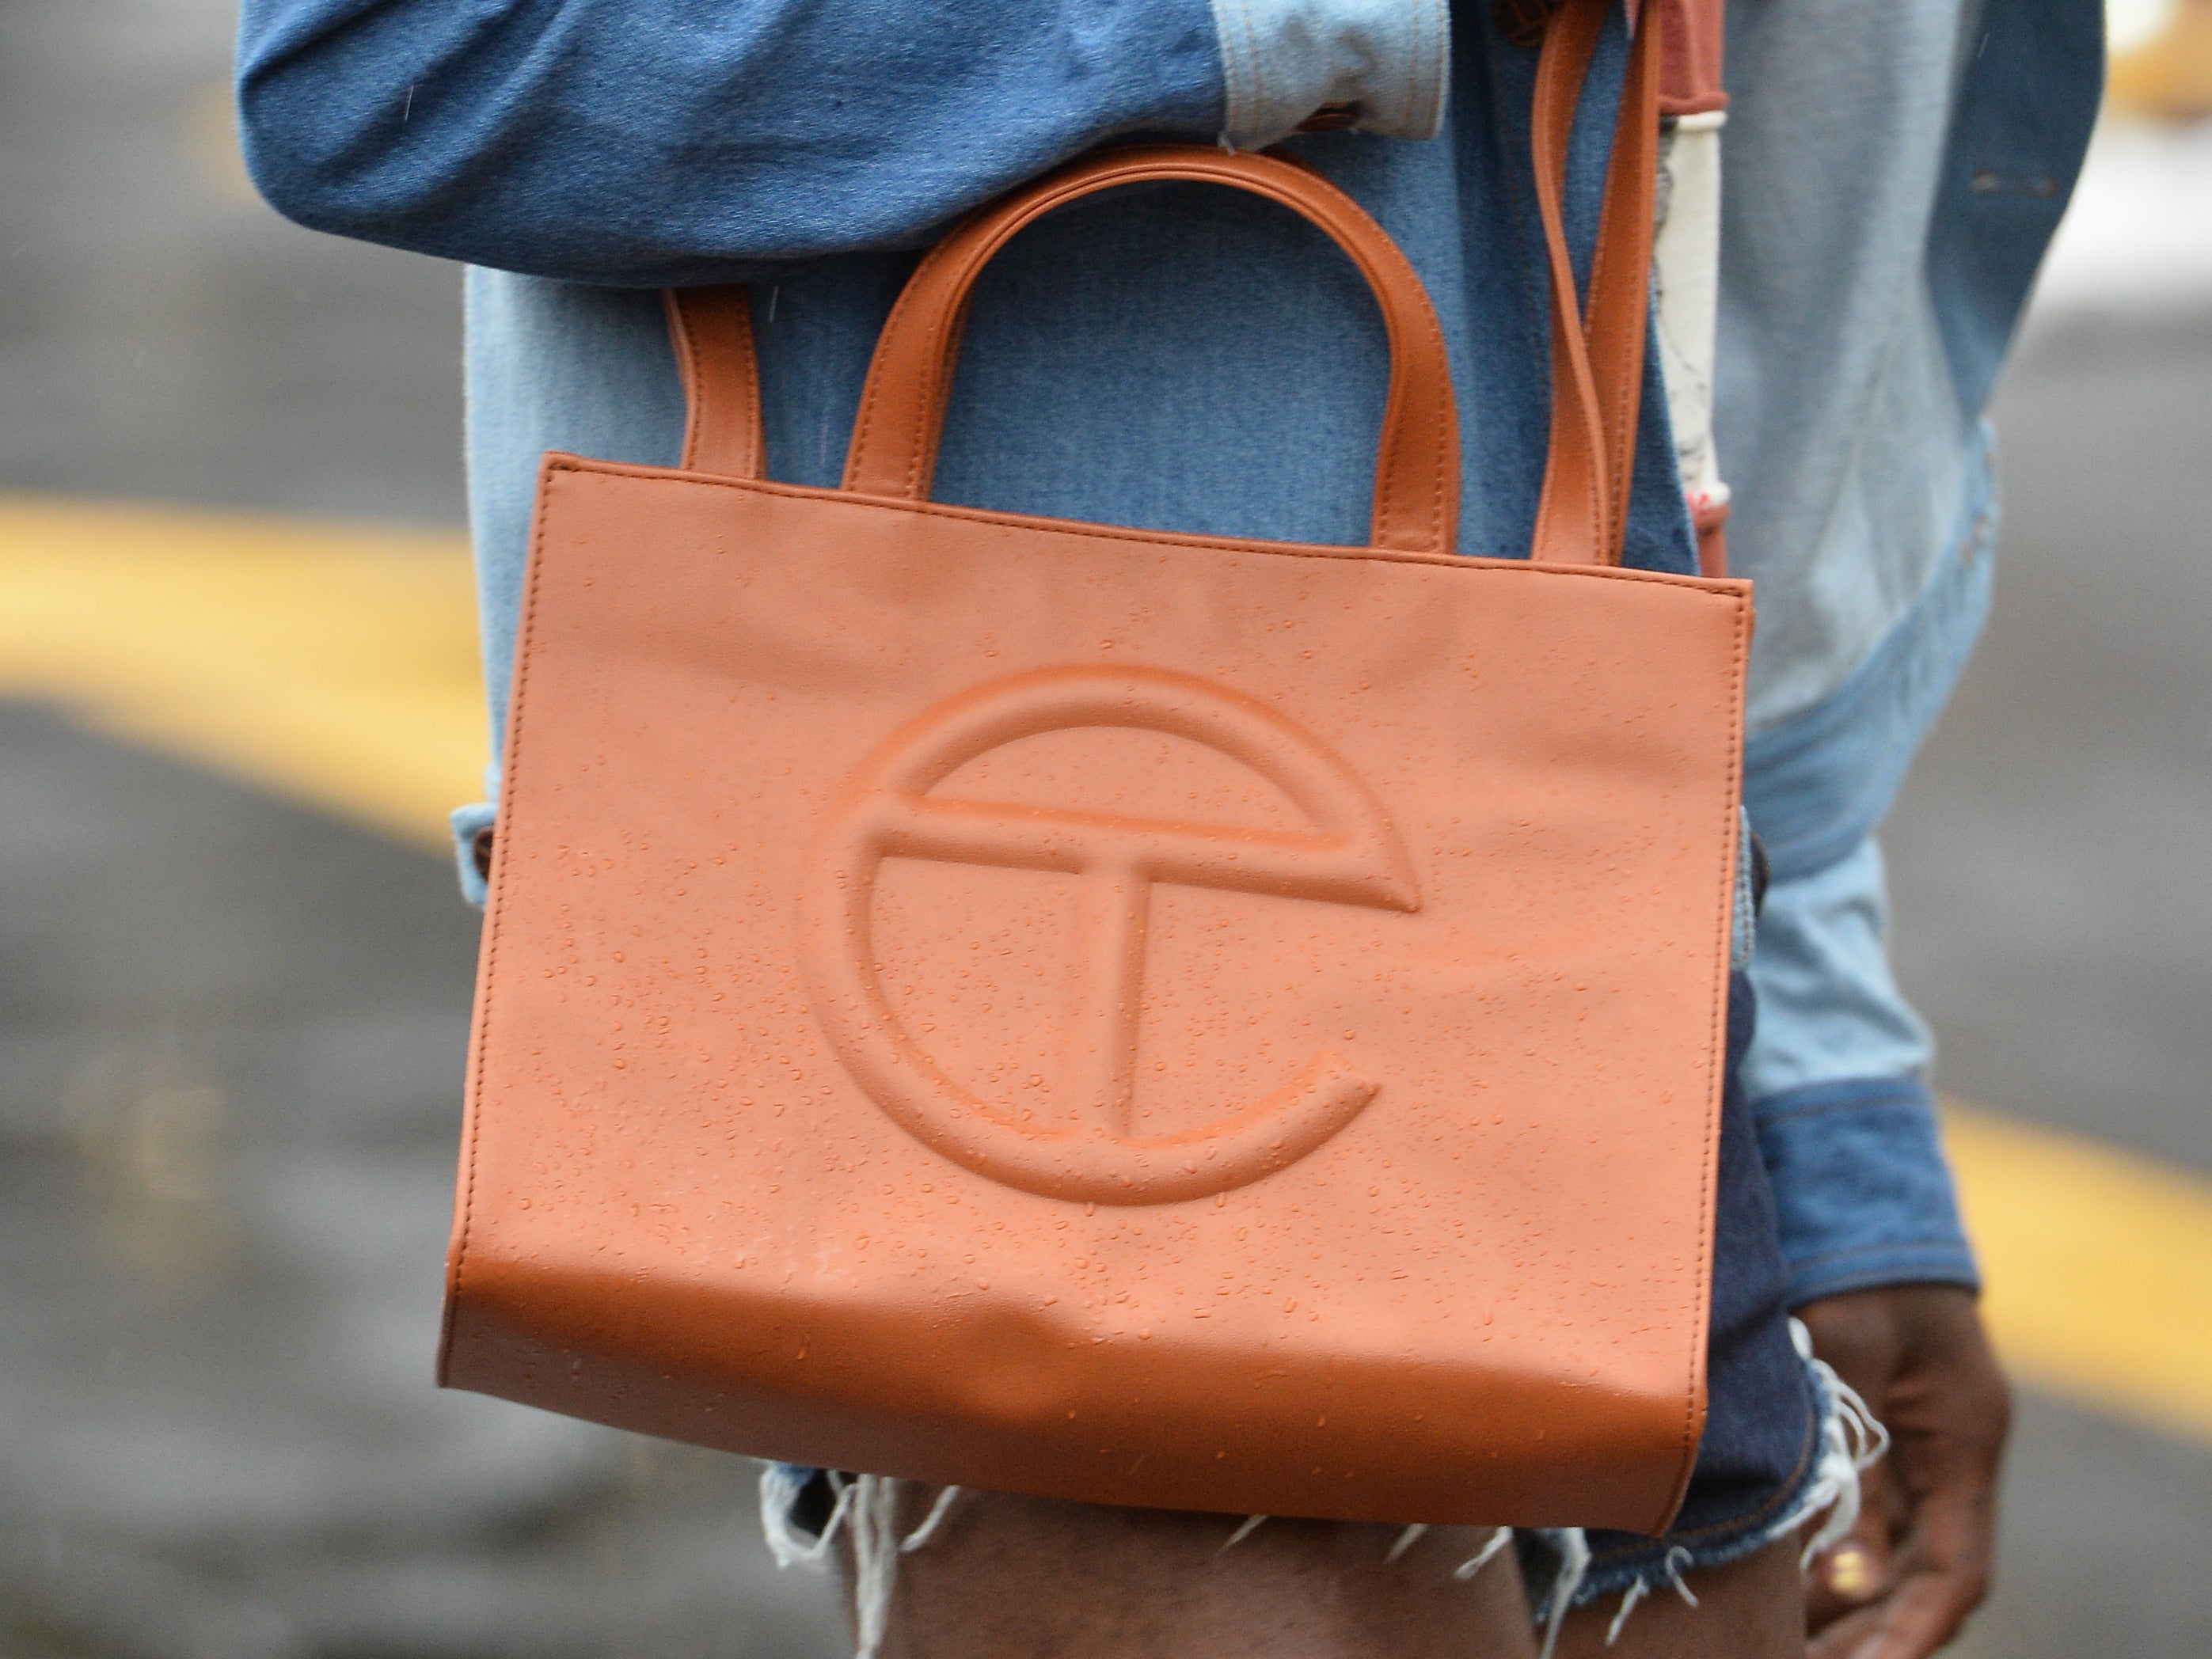 10 Best BlackOwned Handbag Brands to Shop in 2022